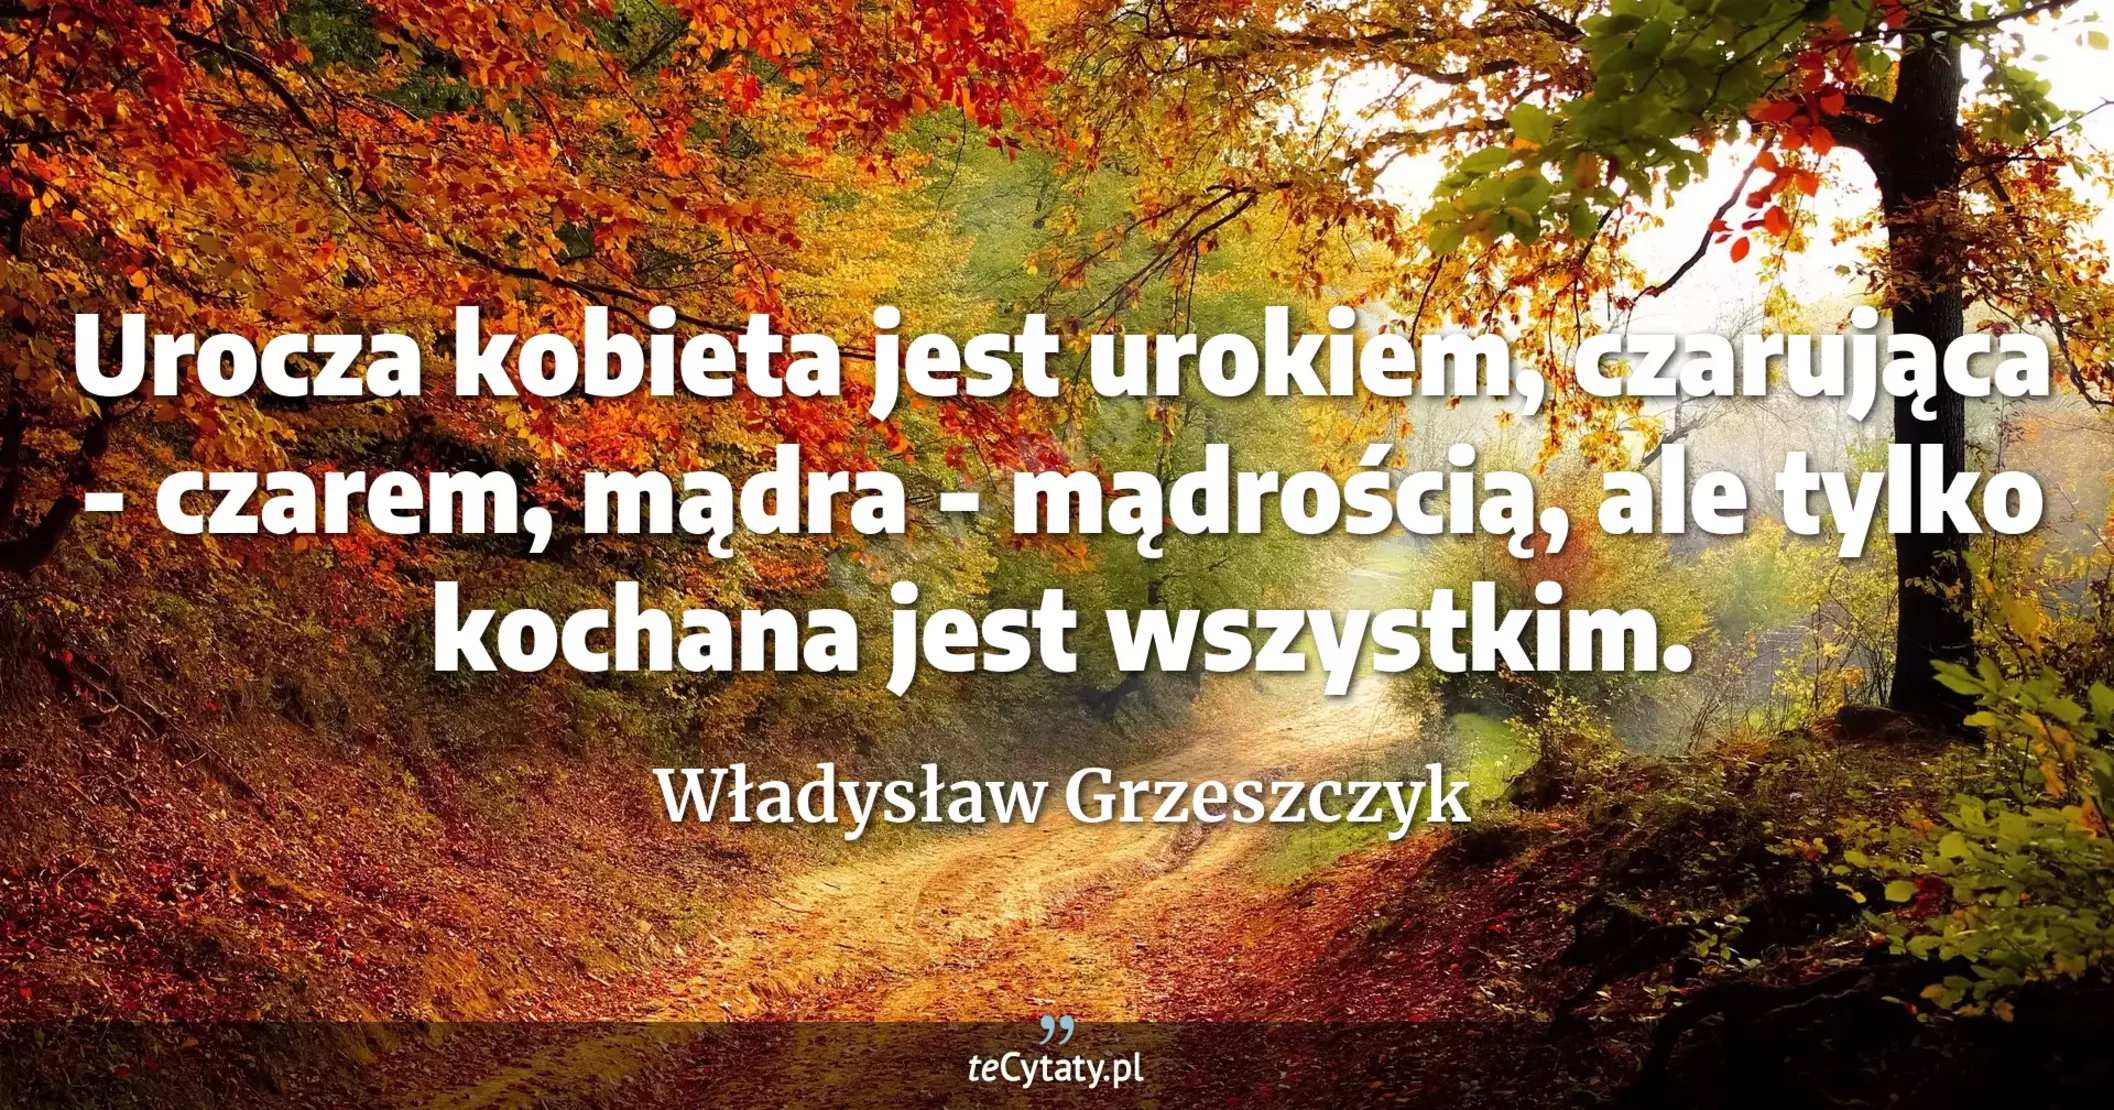 Urocza kobieta jest urokiem, czarująca - czarem, mądra - mądrością, ale tylko kochana jest wszystkim. - Władysław Grzeszczyk